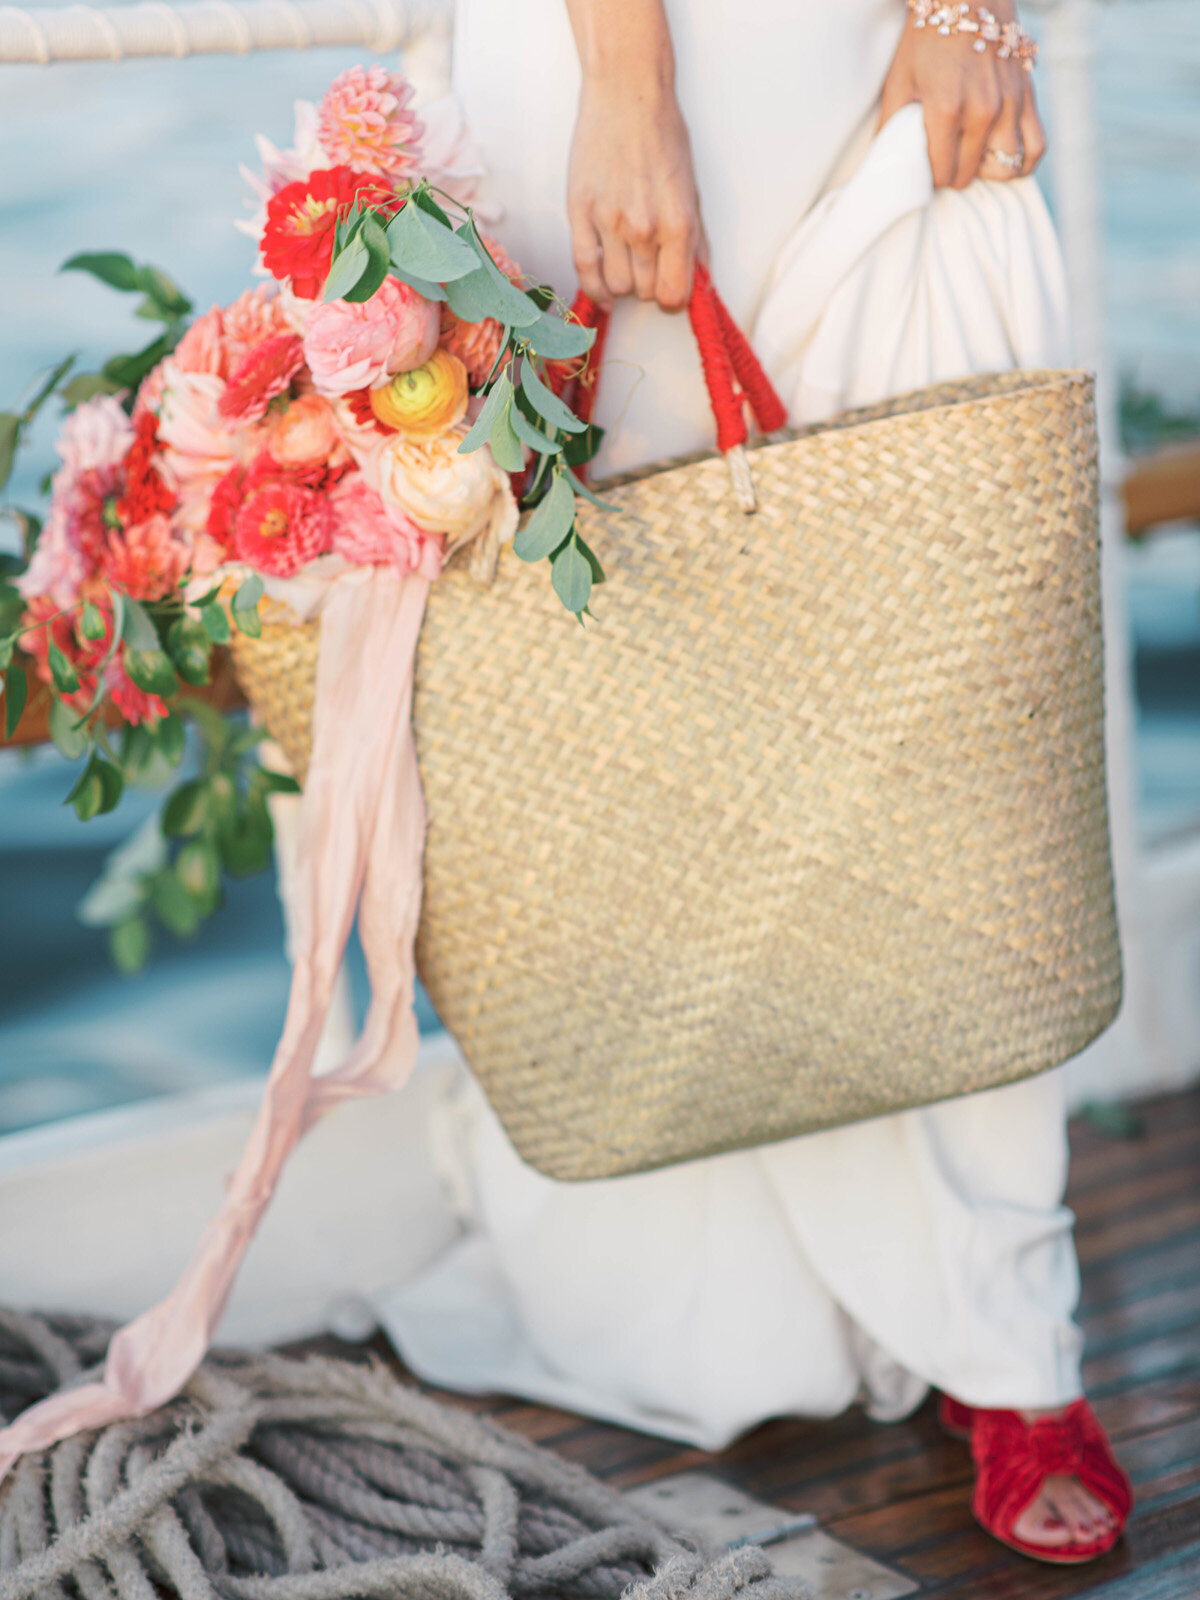 Kate-Murtaugh-Events-elopement-wedding-planner-Boston-Harbor-sailing-sail-boat-yacht-market-bag-dahlia-bouquet-velvet-shoes